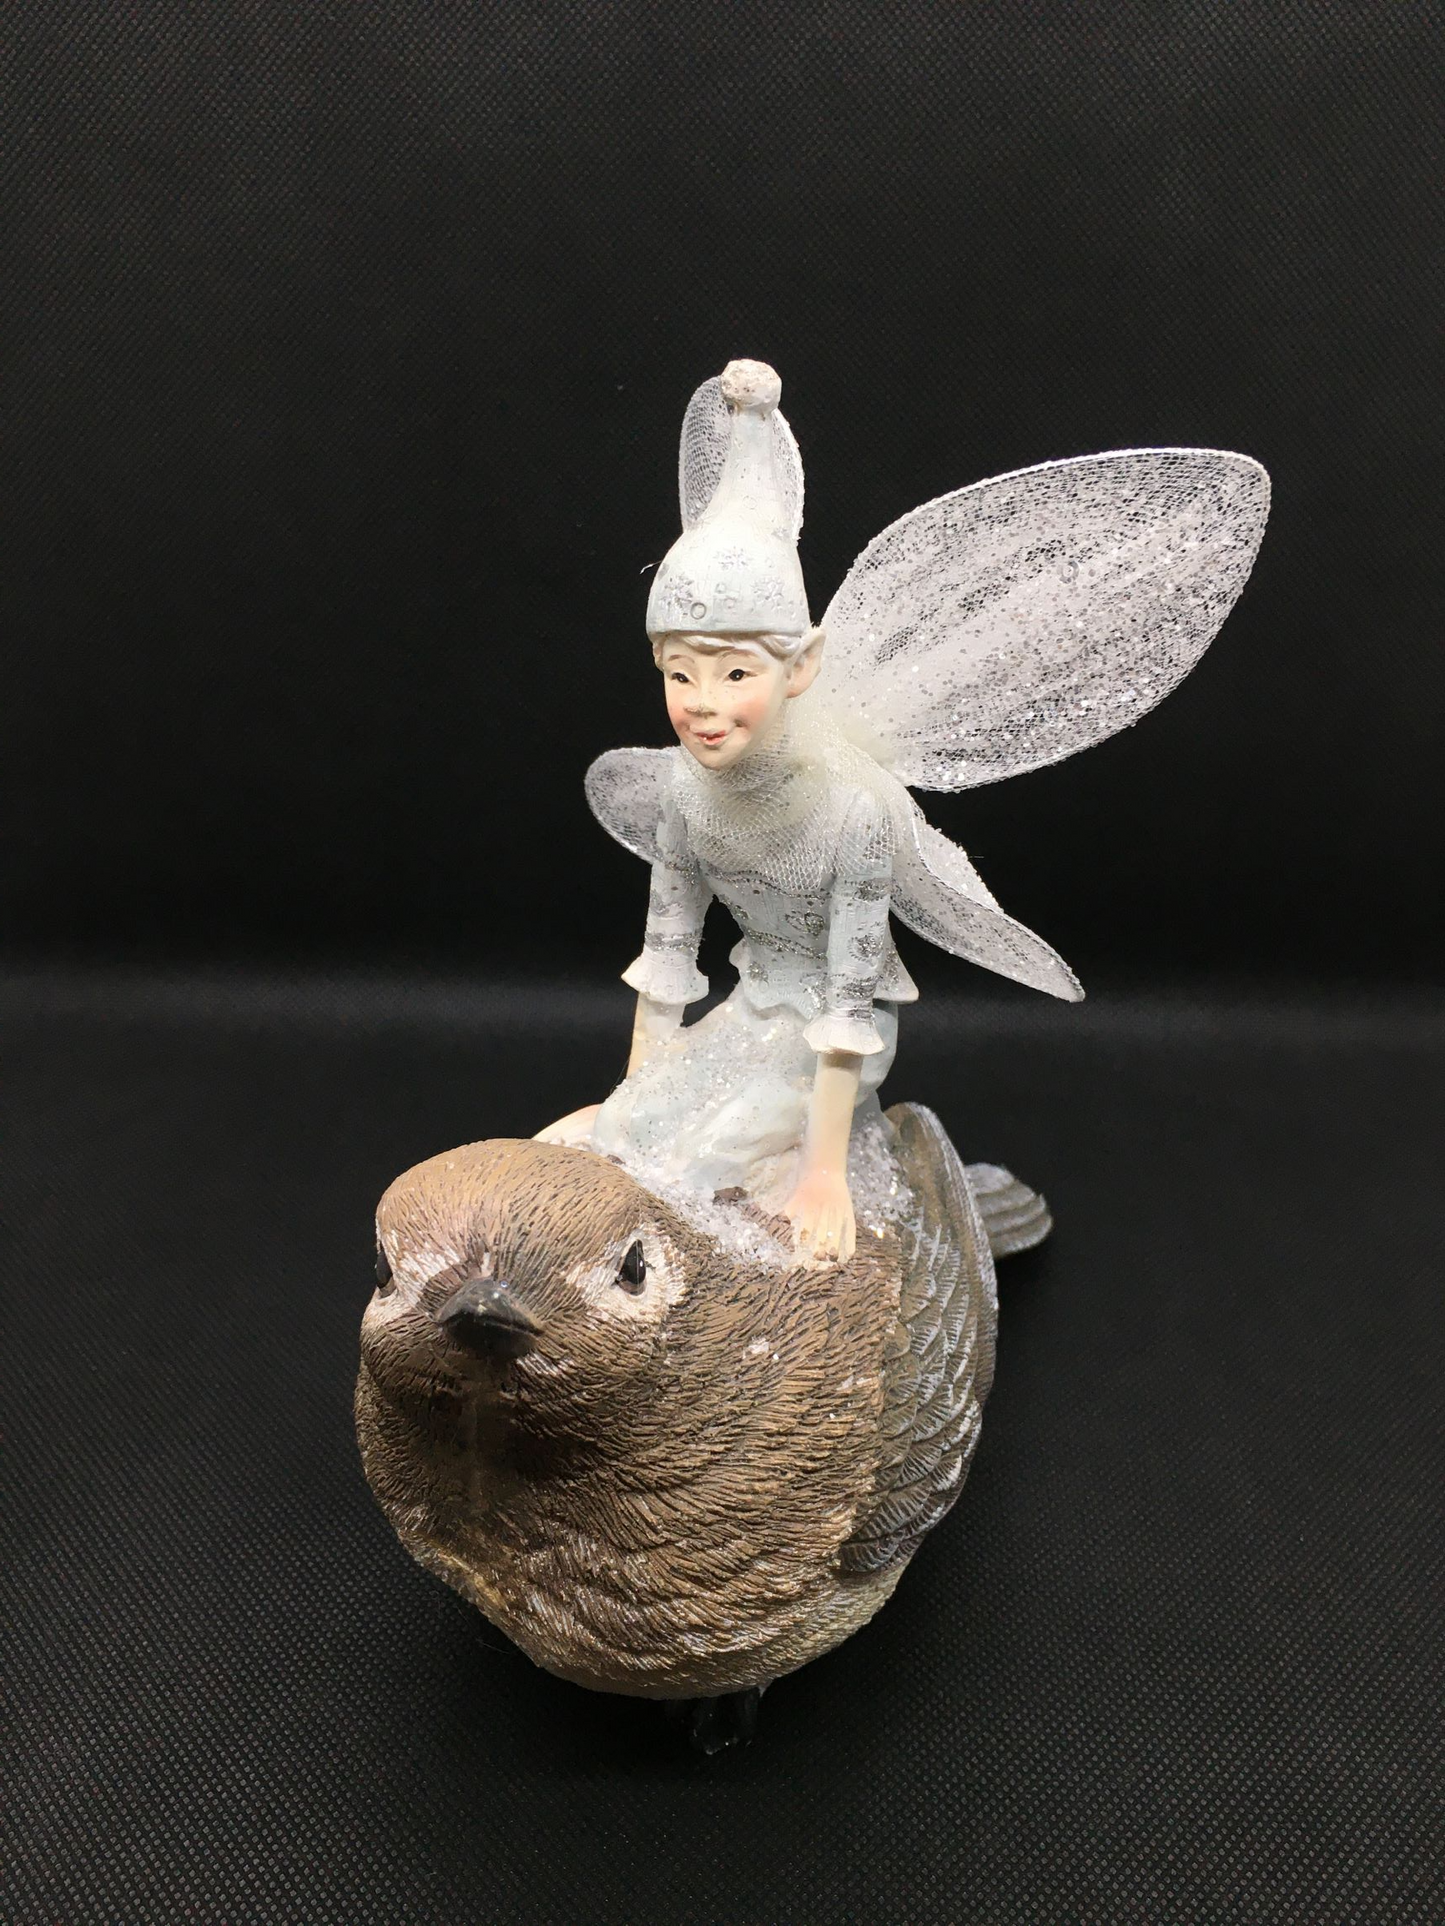 Fatina sul passero in resina decorata con glitter e ali in metallo e velo bianco. Dimensioni: cm 17 x 17